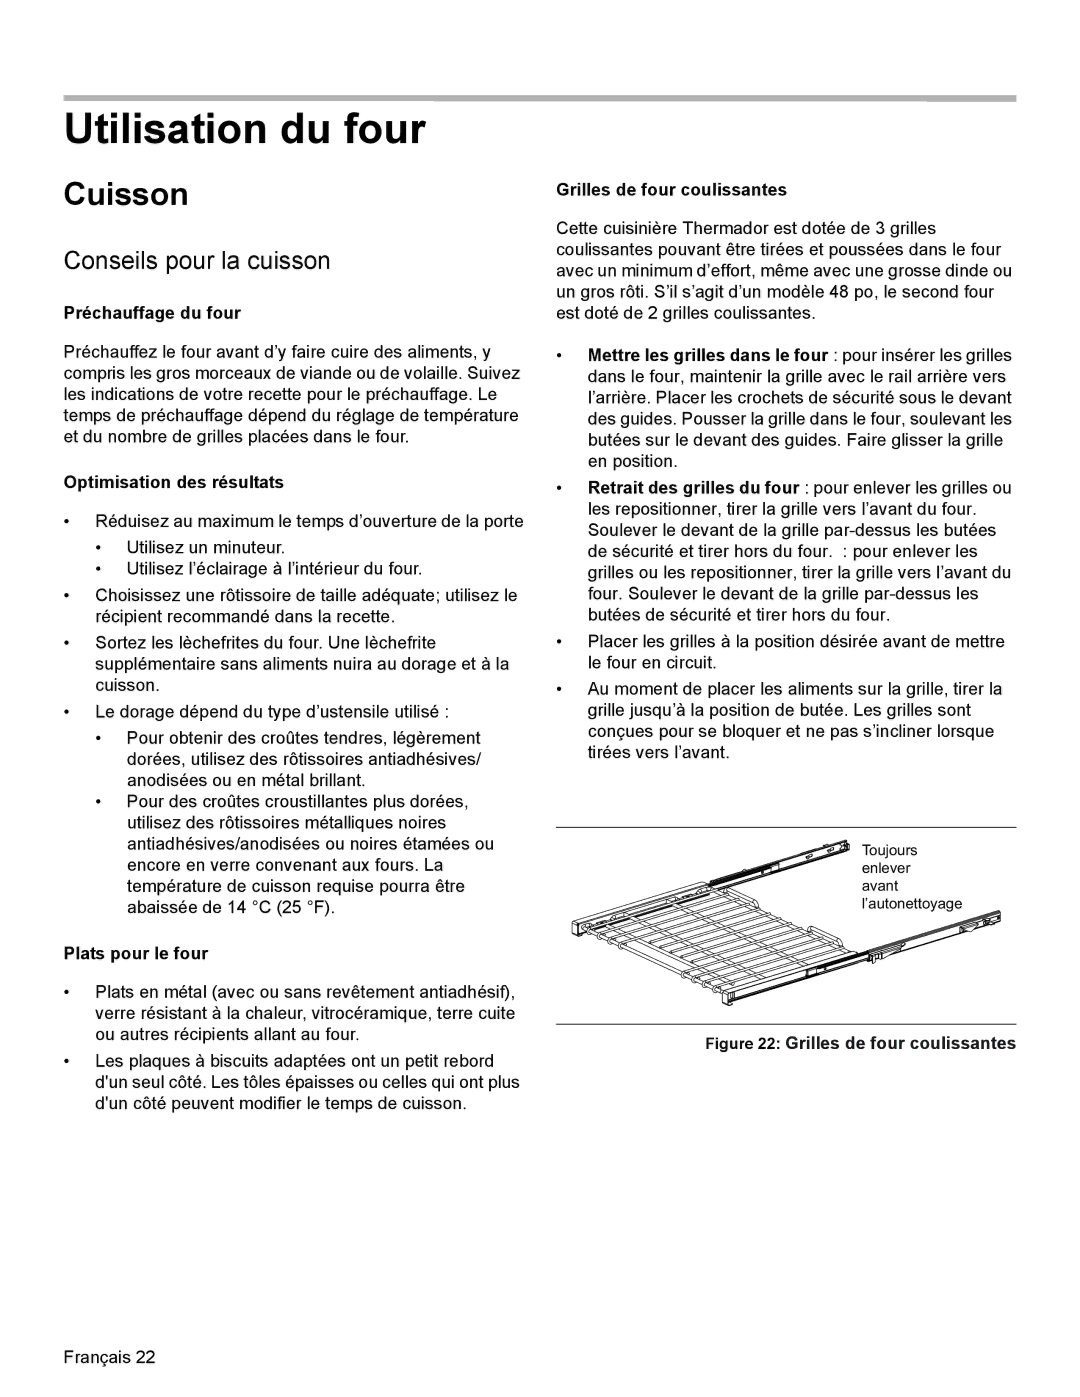 Thermador PRD48, PRD36, PRD30 manual Utilisation du four, Cuisson, Conseils pour la cuisson 